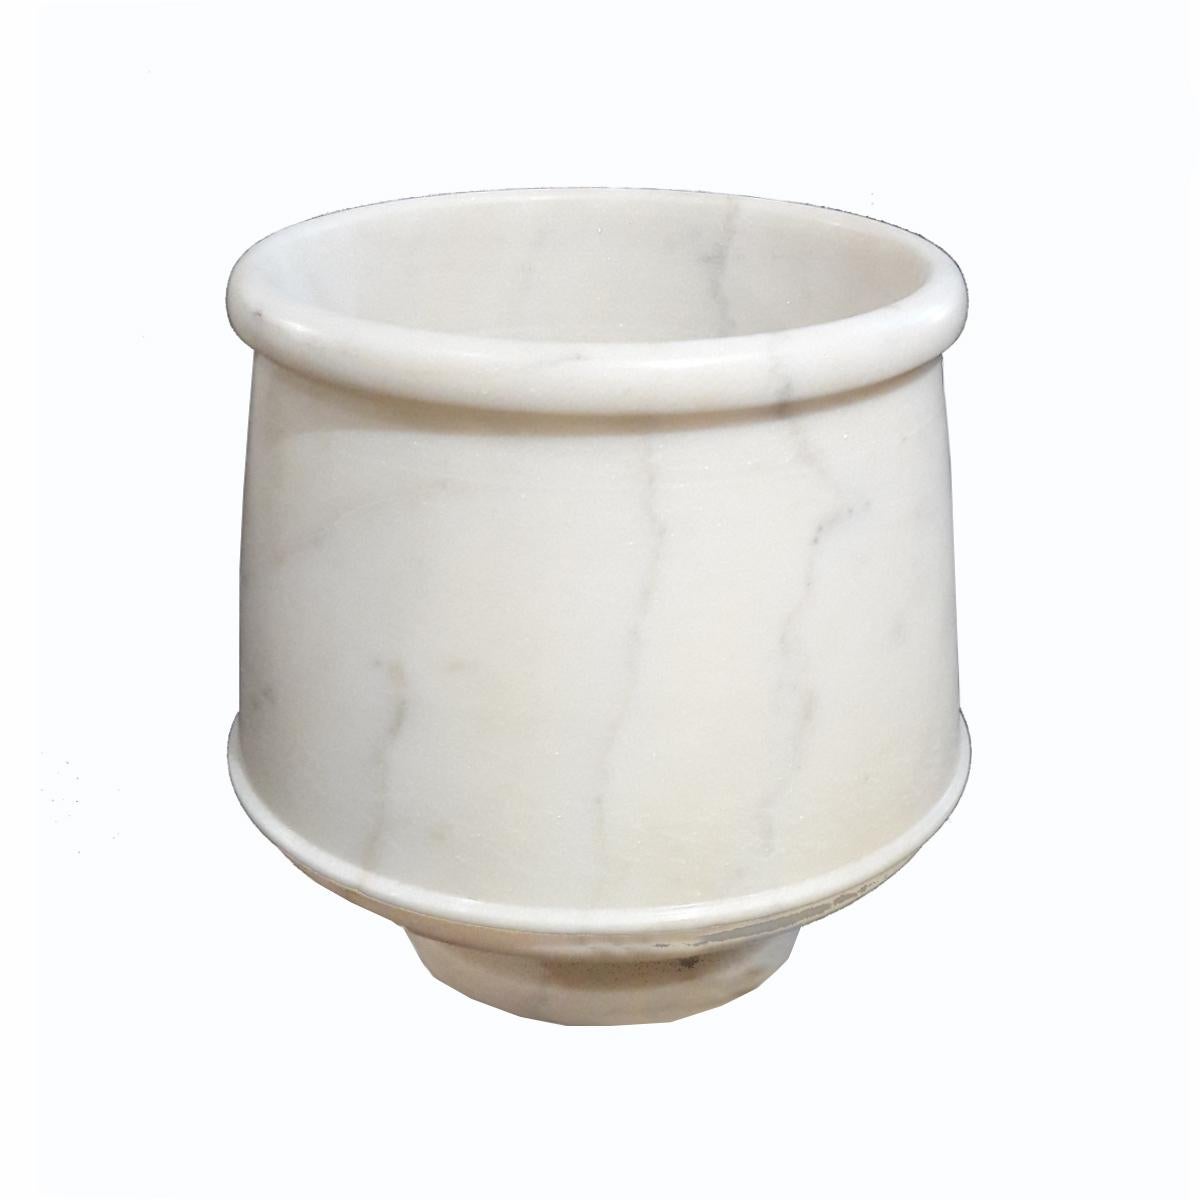 Gobelet, récipient ou vase, sculpté à la main en Inde dans du marbre statuaire. Fin du 20e siècle. 
Idéal pour placer des compositions florales, ou peut être utilisé comme un récipient, un vide-poche ou simplement comme un accessoire élégant dans